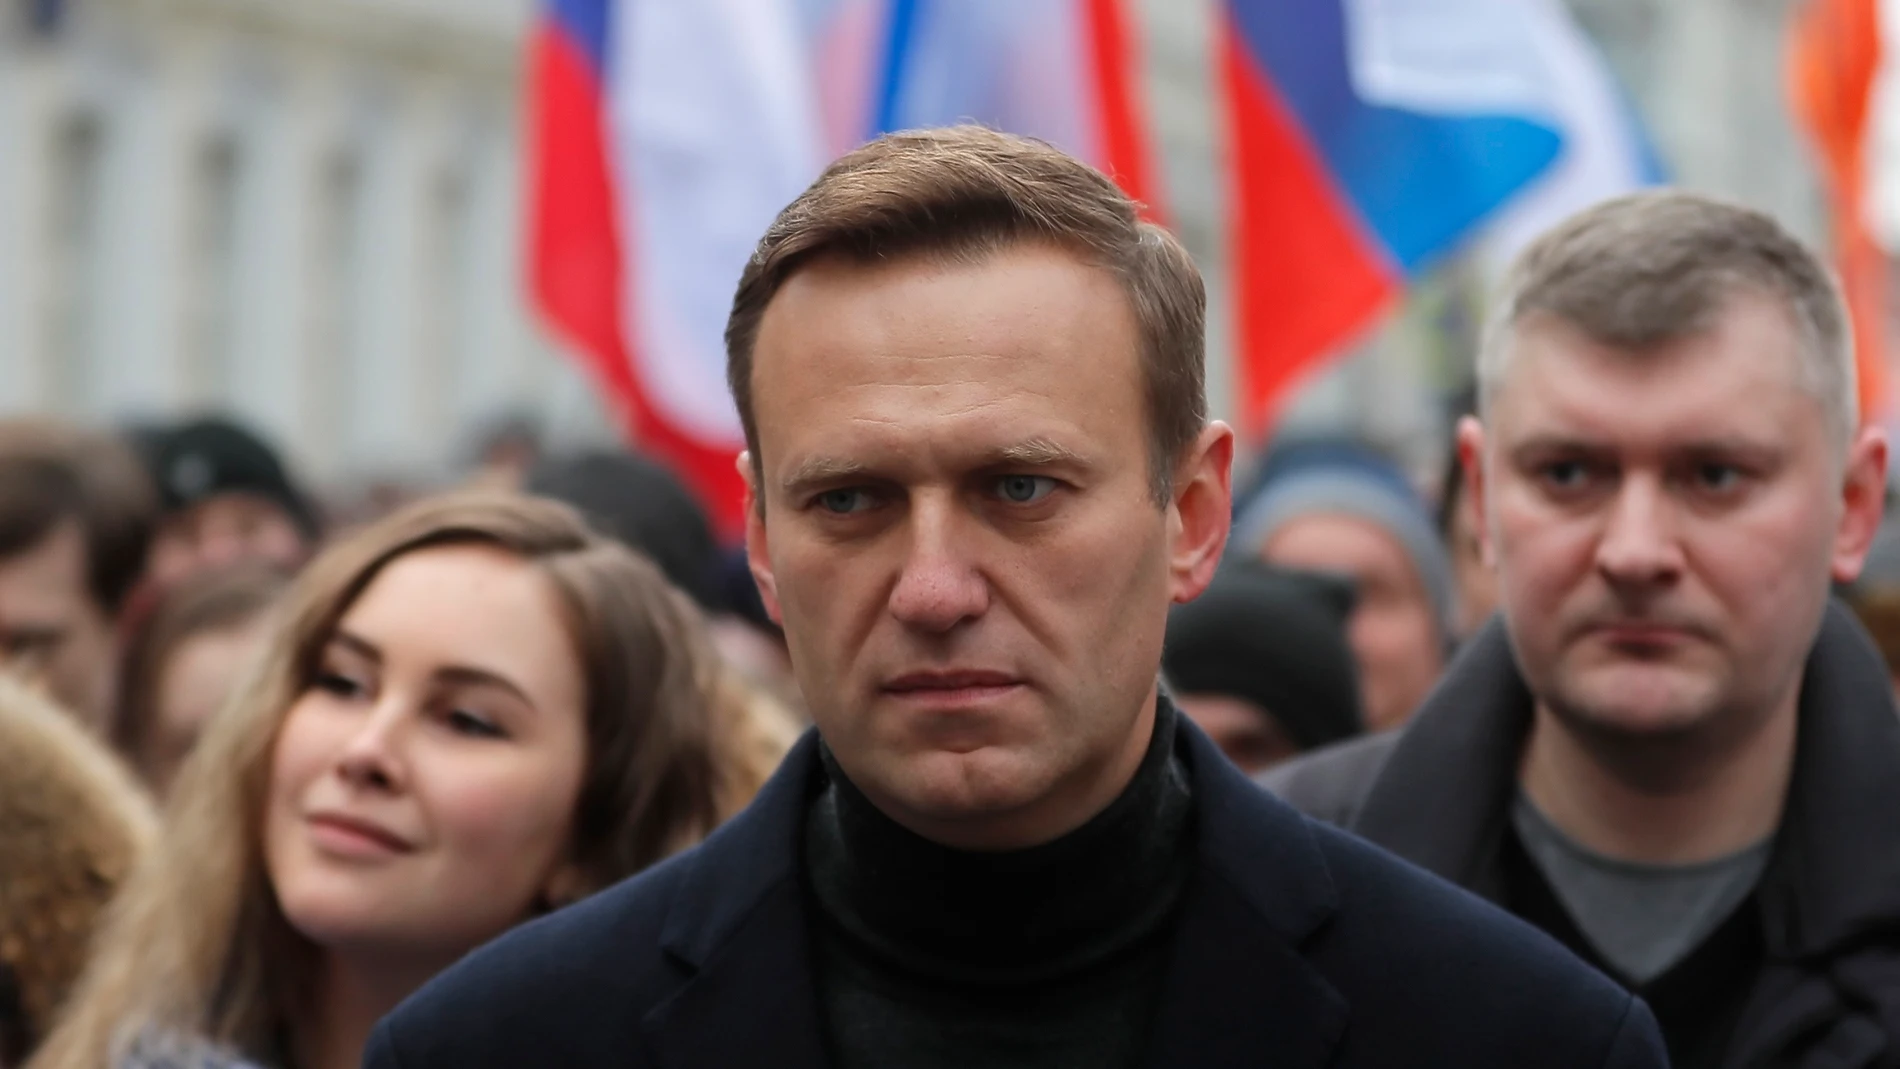 El líder de la oposición rusa Alexei Navalni participa en una marcha en Moscú, Rusia, el 29 de febrero de 2020